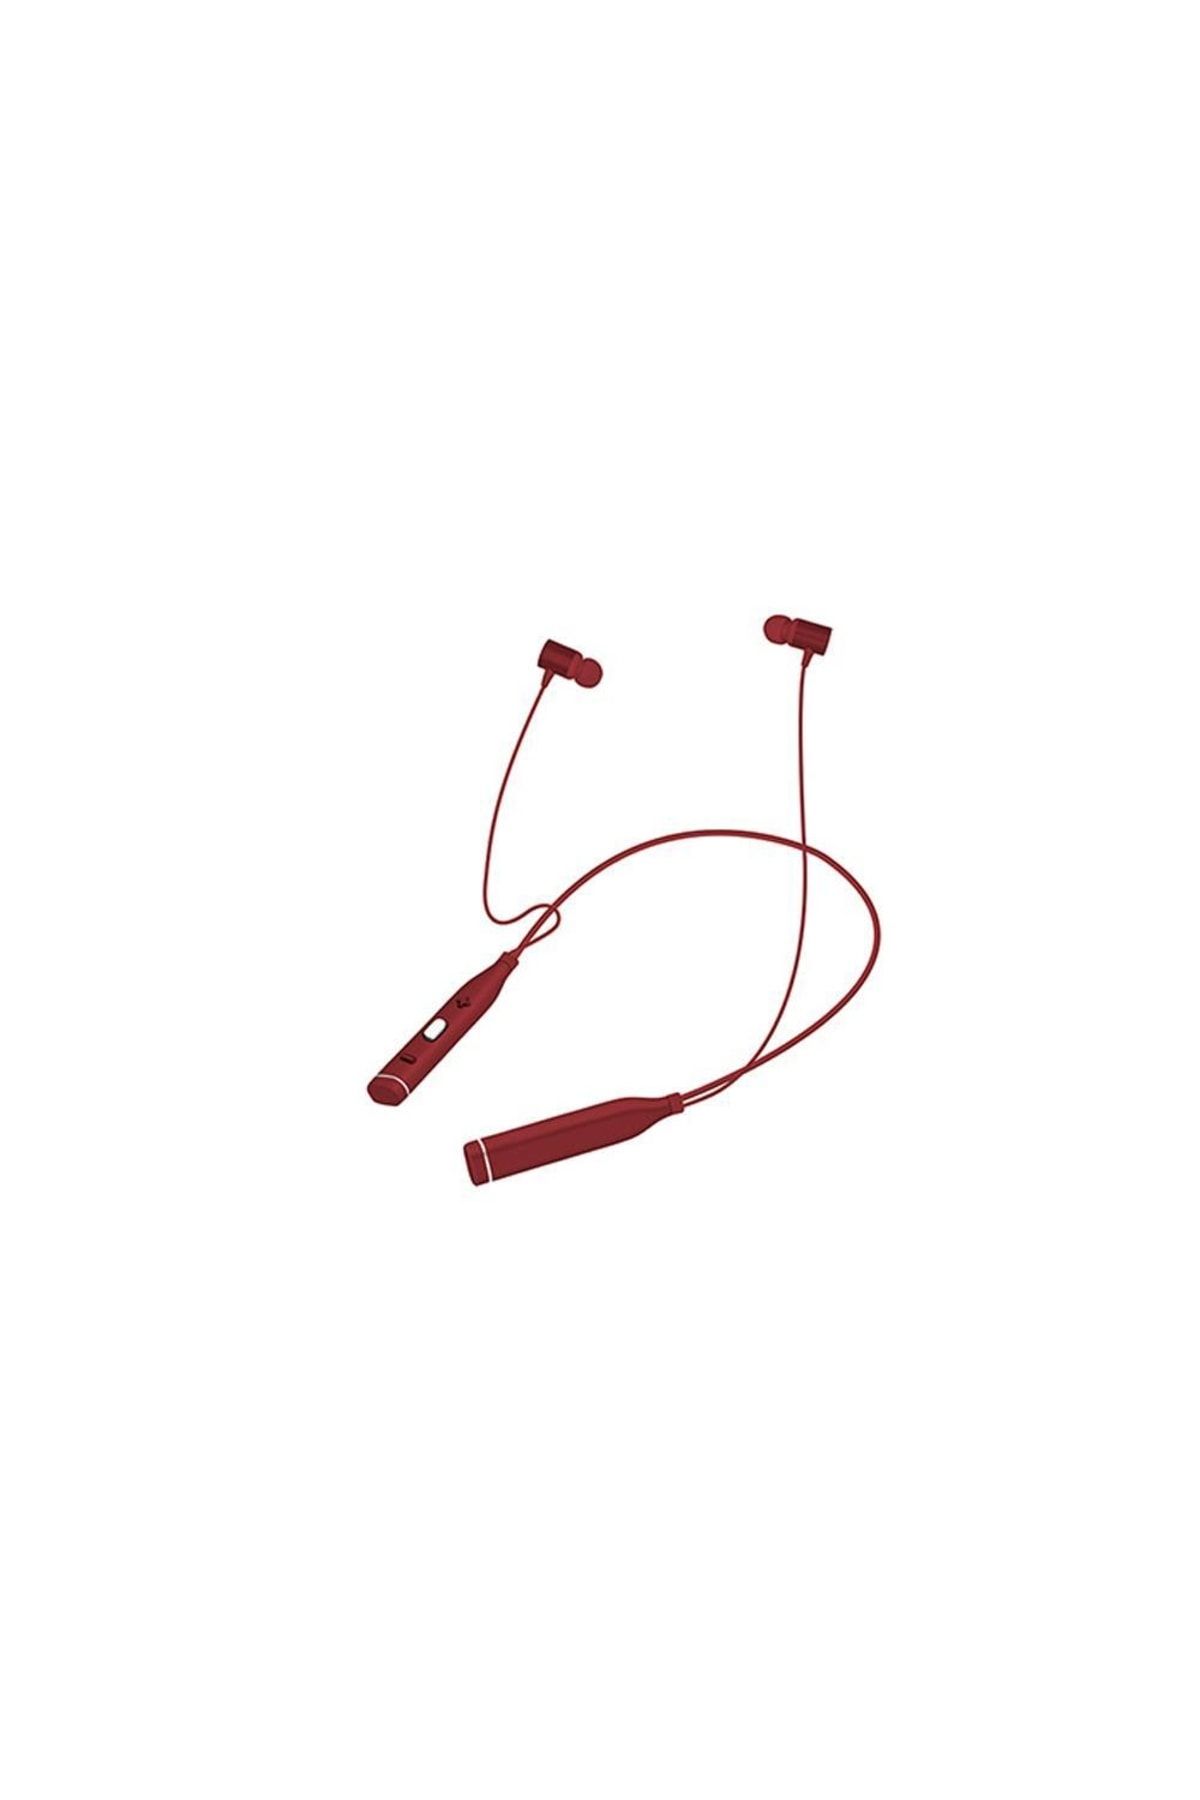 Snopy Sn-bts20 Kırmızı Boyun Askılı Mıknatıslı Bluetooth Spor Kulak Içi Kulaklık